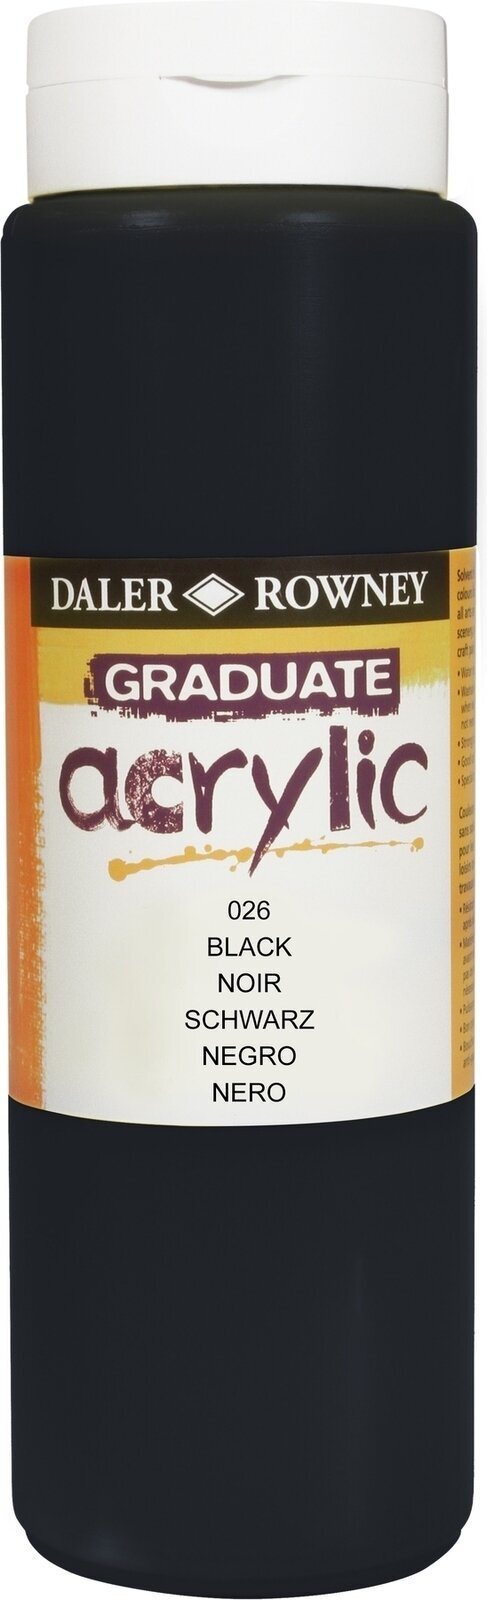 Akrylfärg Daler Rowney Graduate Akrylfärg Black 500 ml 1 st